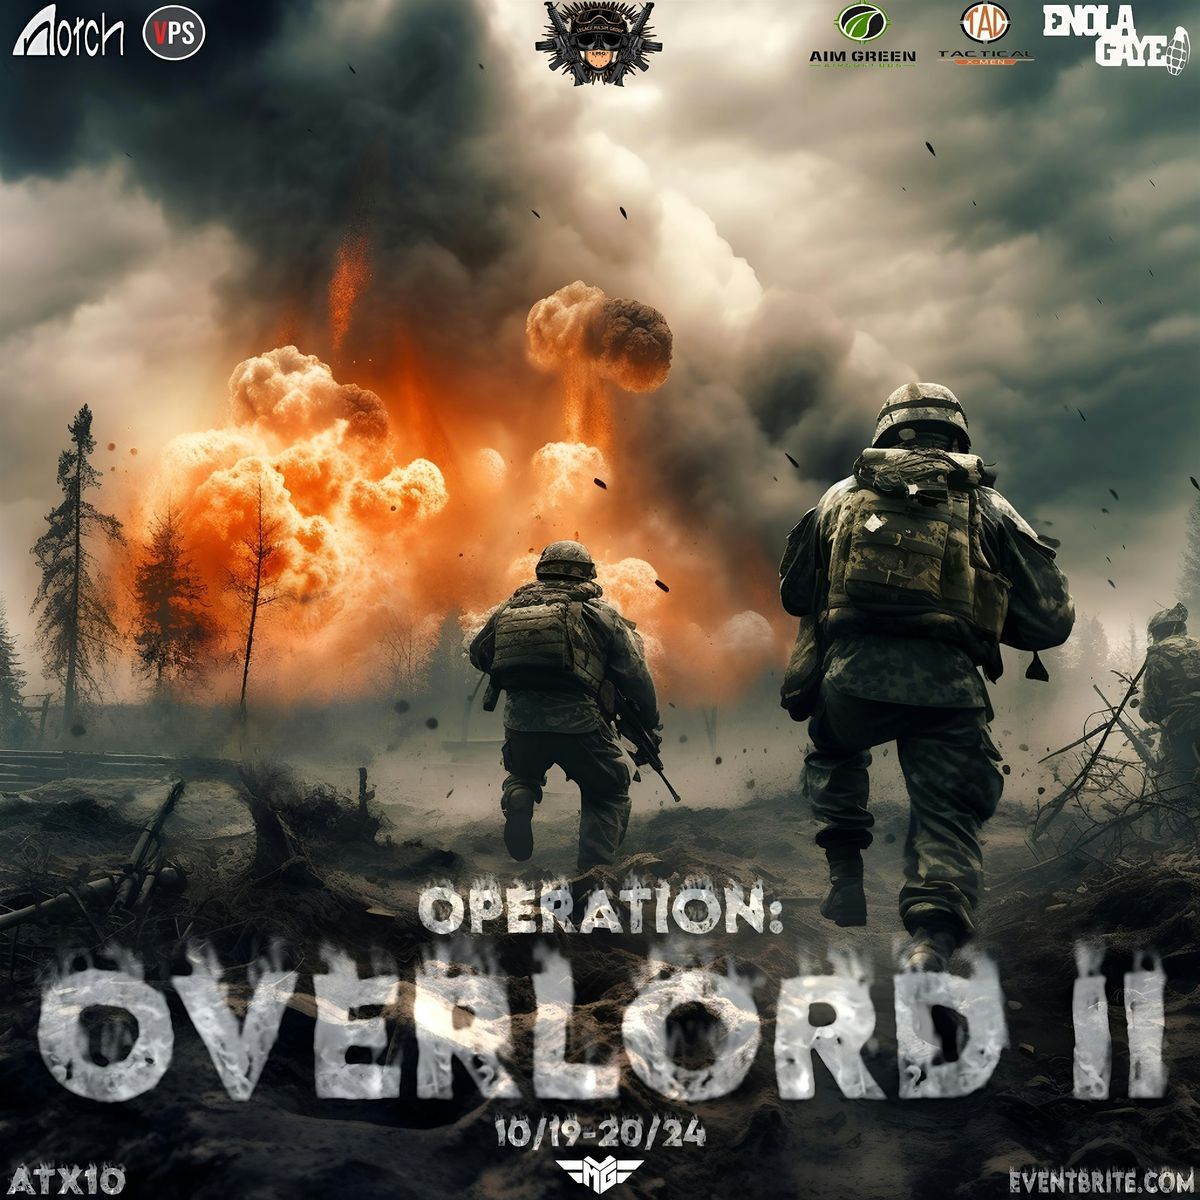 OPERATION: OVERLORD II